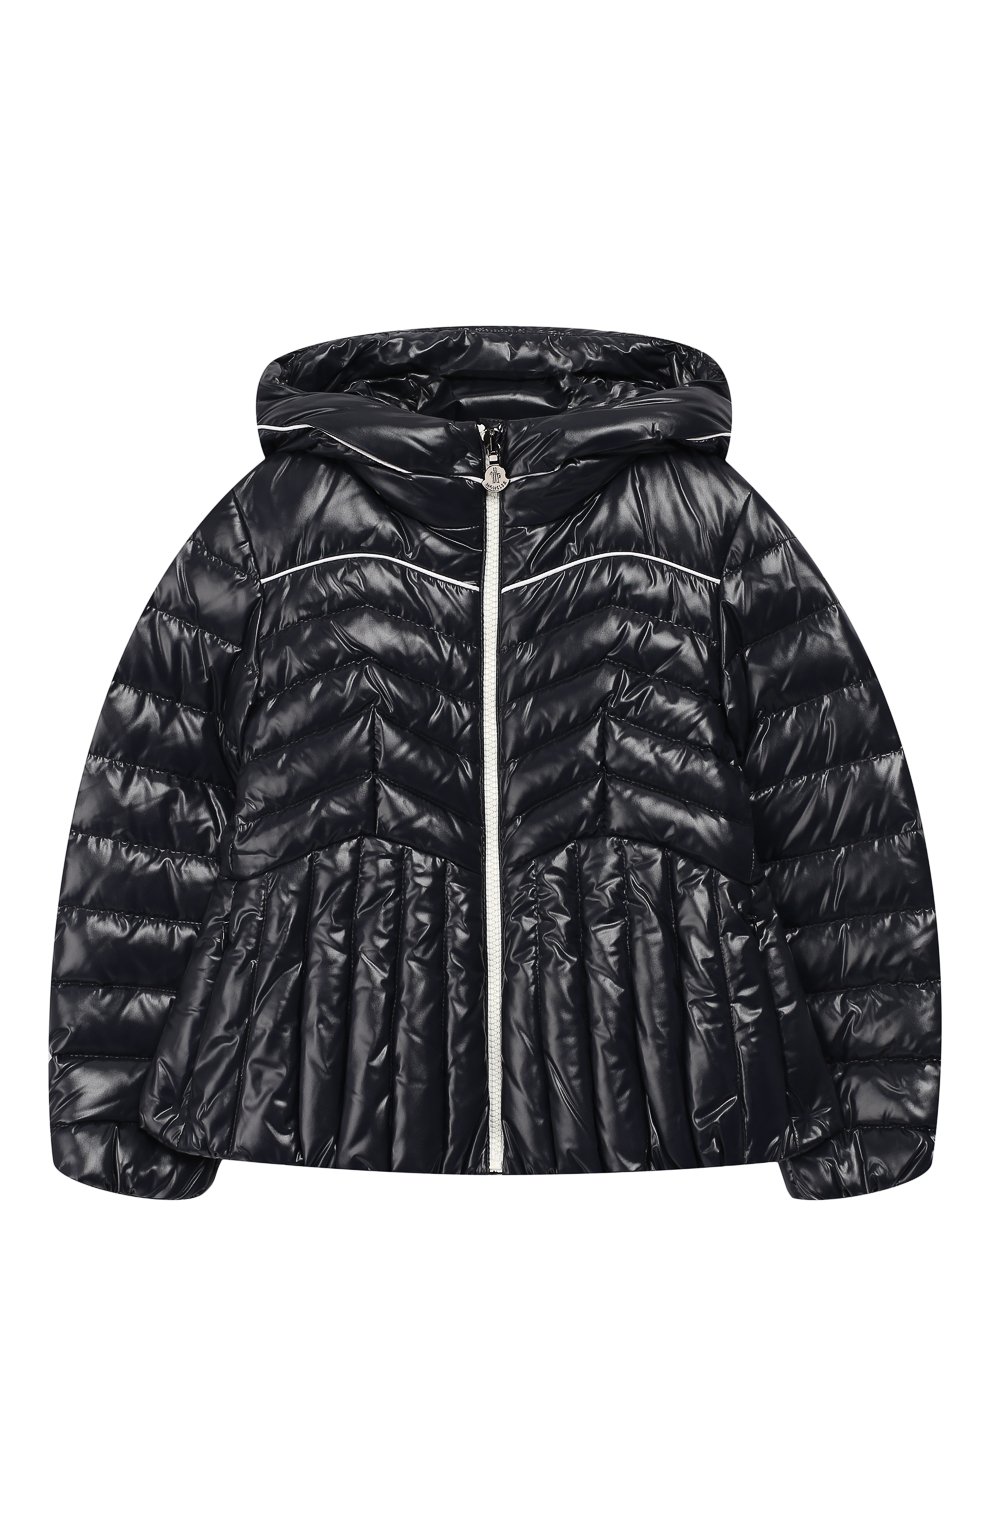 Верхняя одежда Moncler Enfant, Пуховая куртка на молнии с капюшоном Moncler Enfant, Венгрия, Синий, Наполнитель-гусиный пух: 90%; Полиамид: 100%; Подкладка-полиамид: 100%; Наполнитель-гусиное перо: 10%;, 5910932  - купить